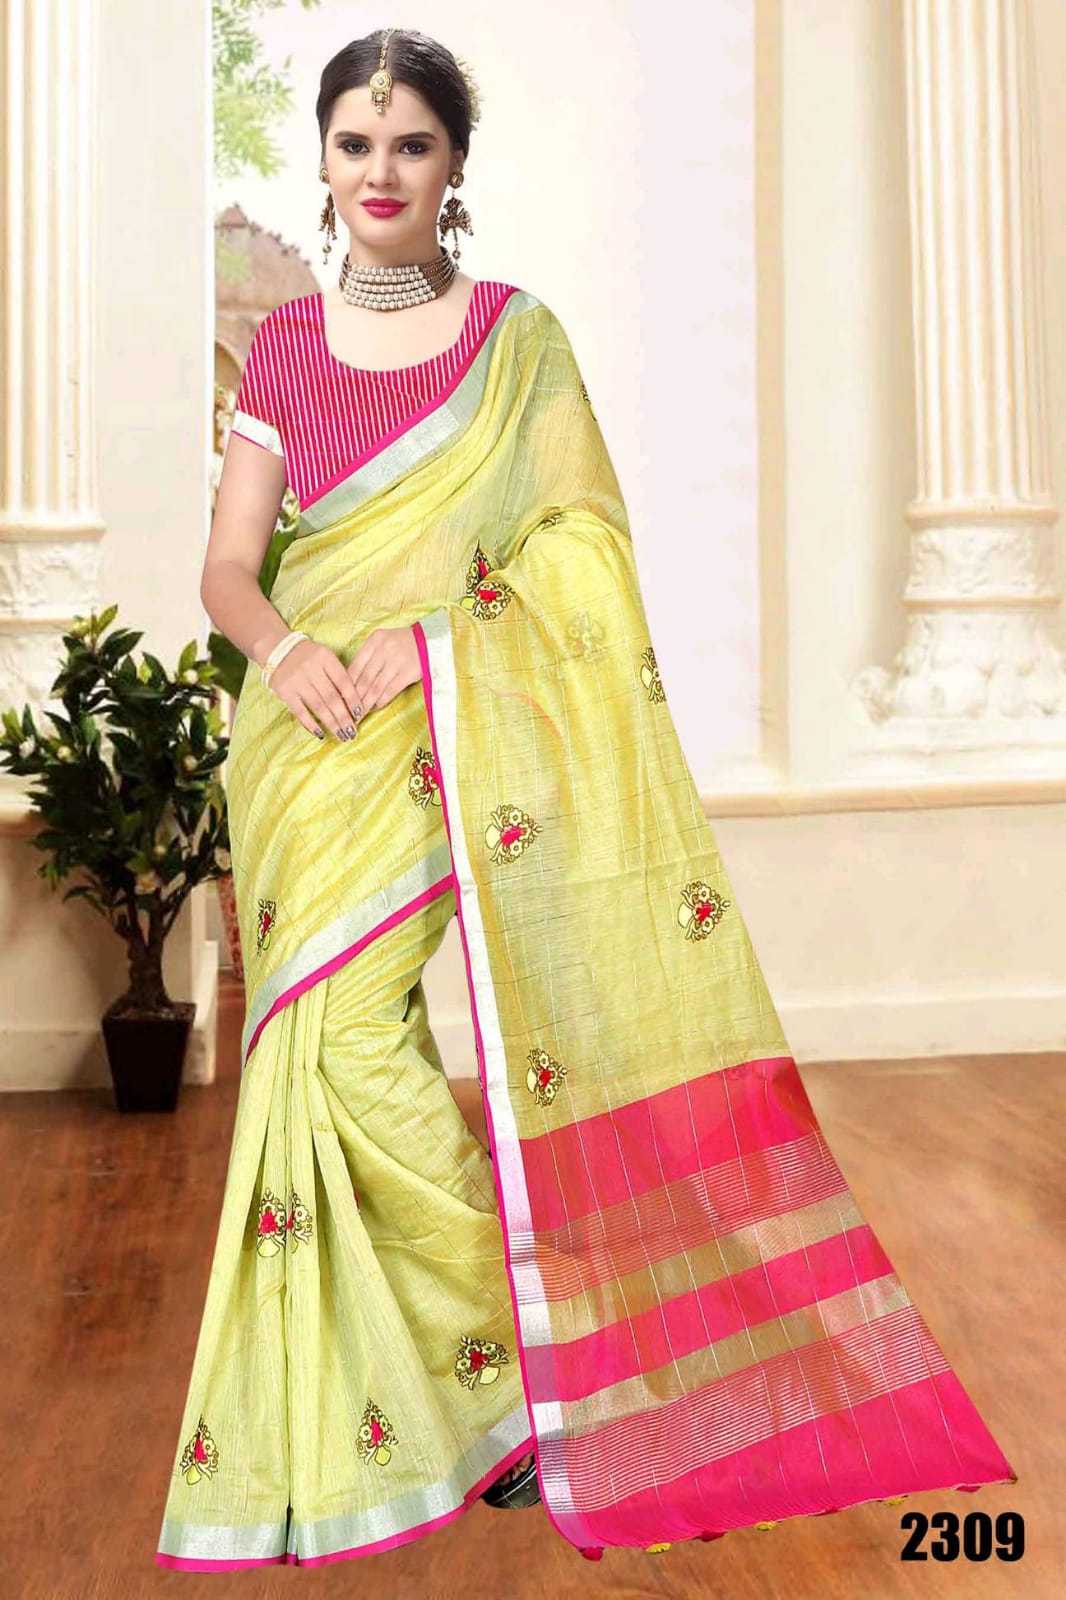 Priyanka Saree 2304-2309 Series Linen Work Traditional Wear Saree